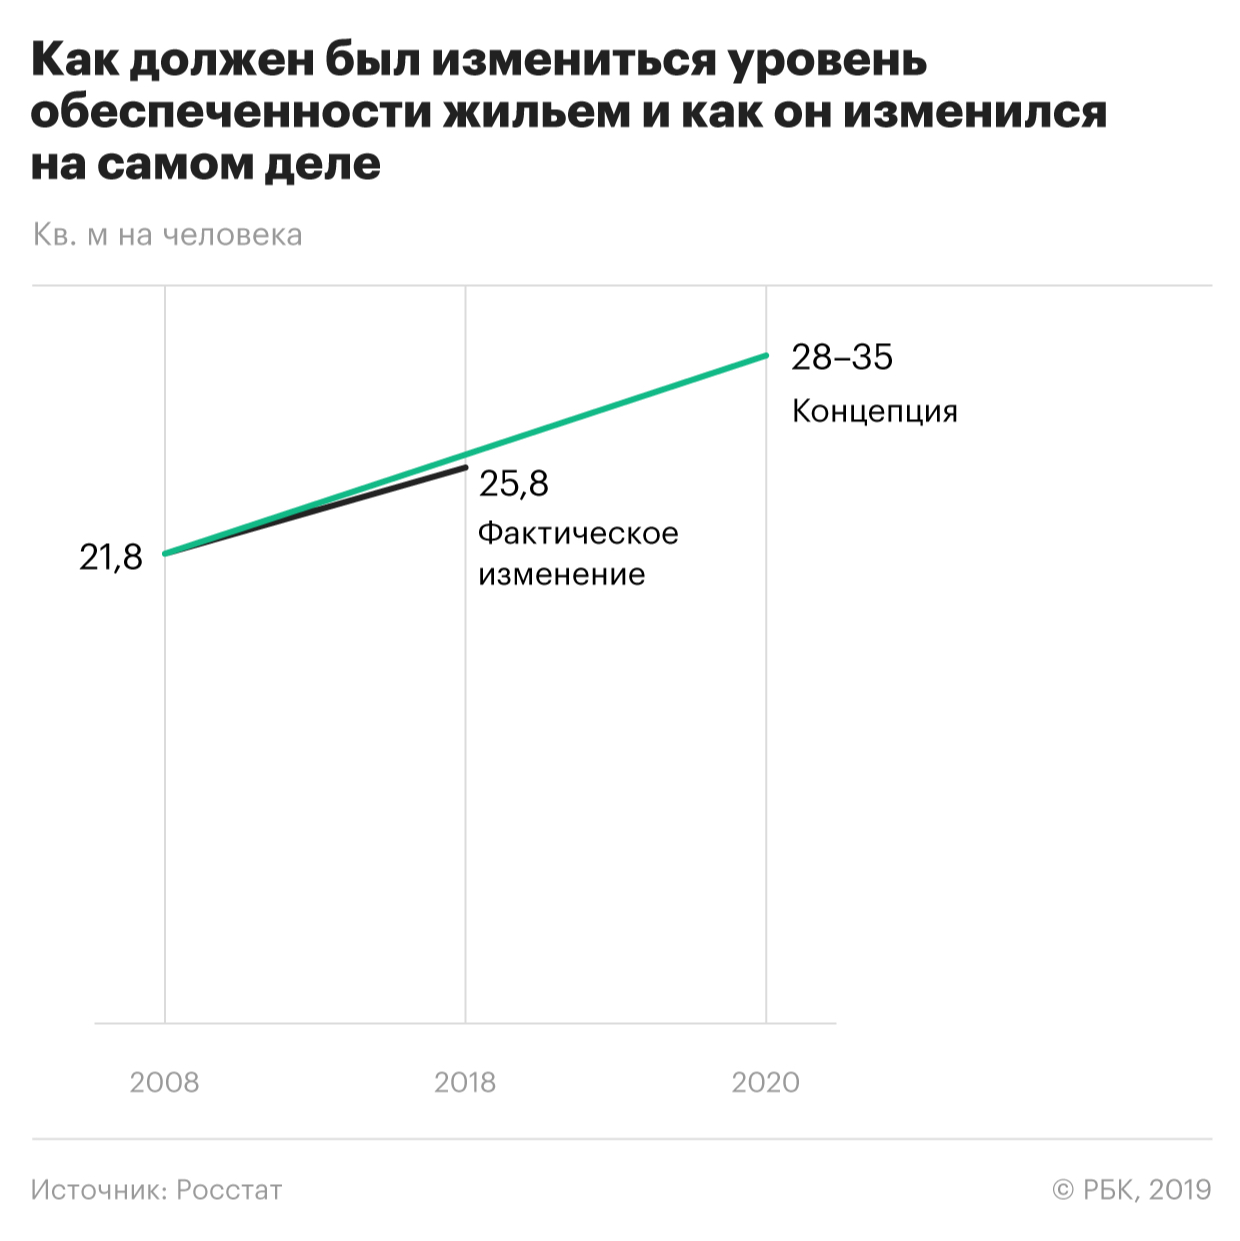 Концепция развития России до 2020 года оказалась невыполнимой